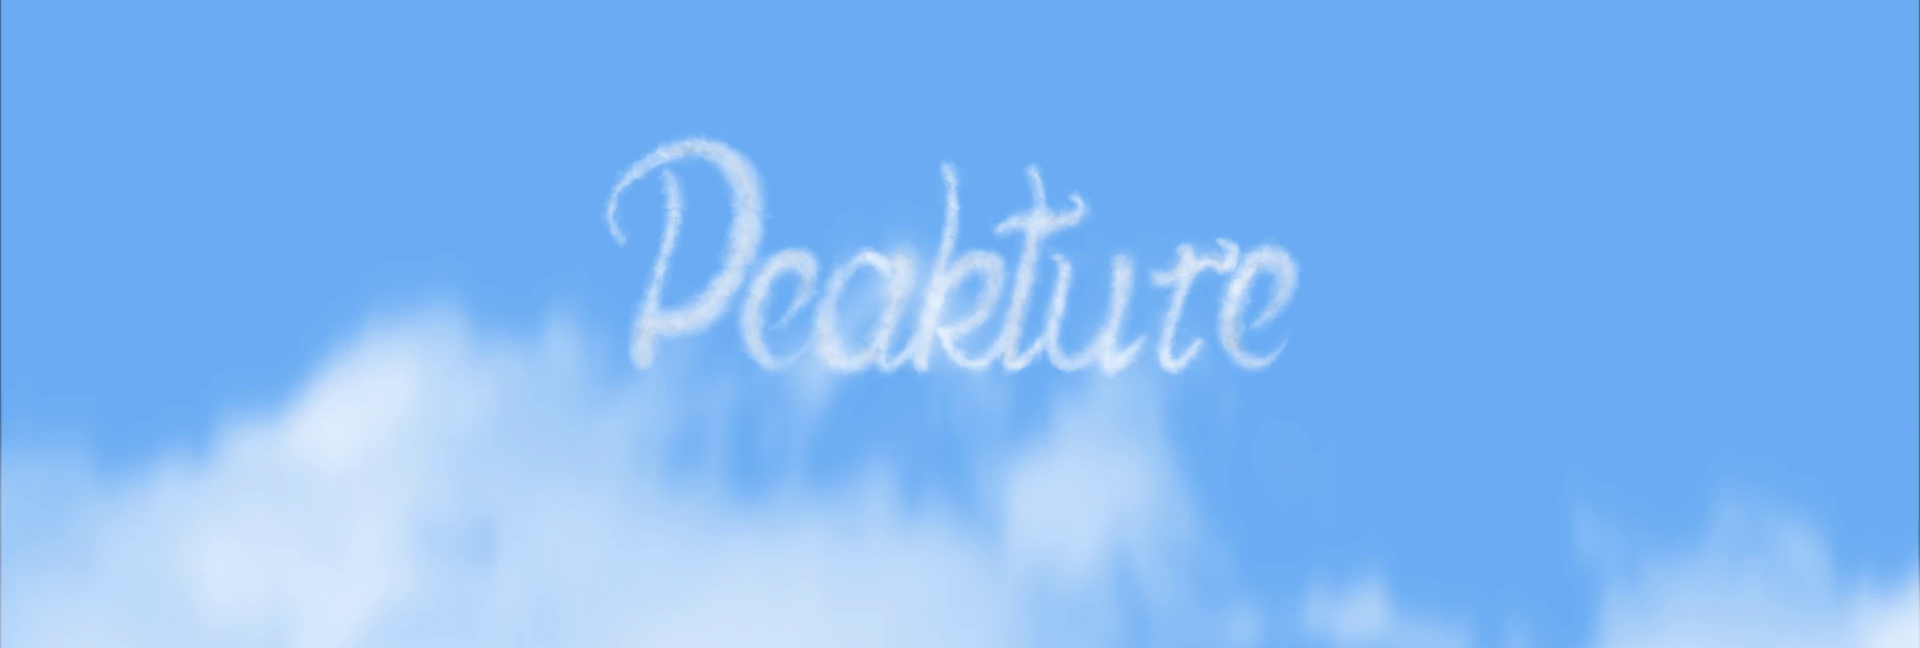 Peakture